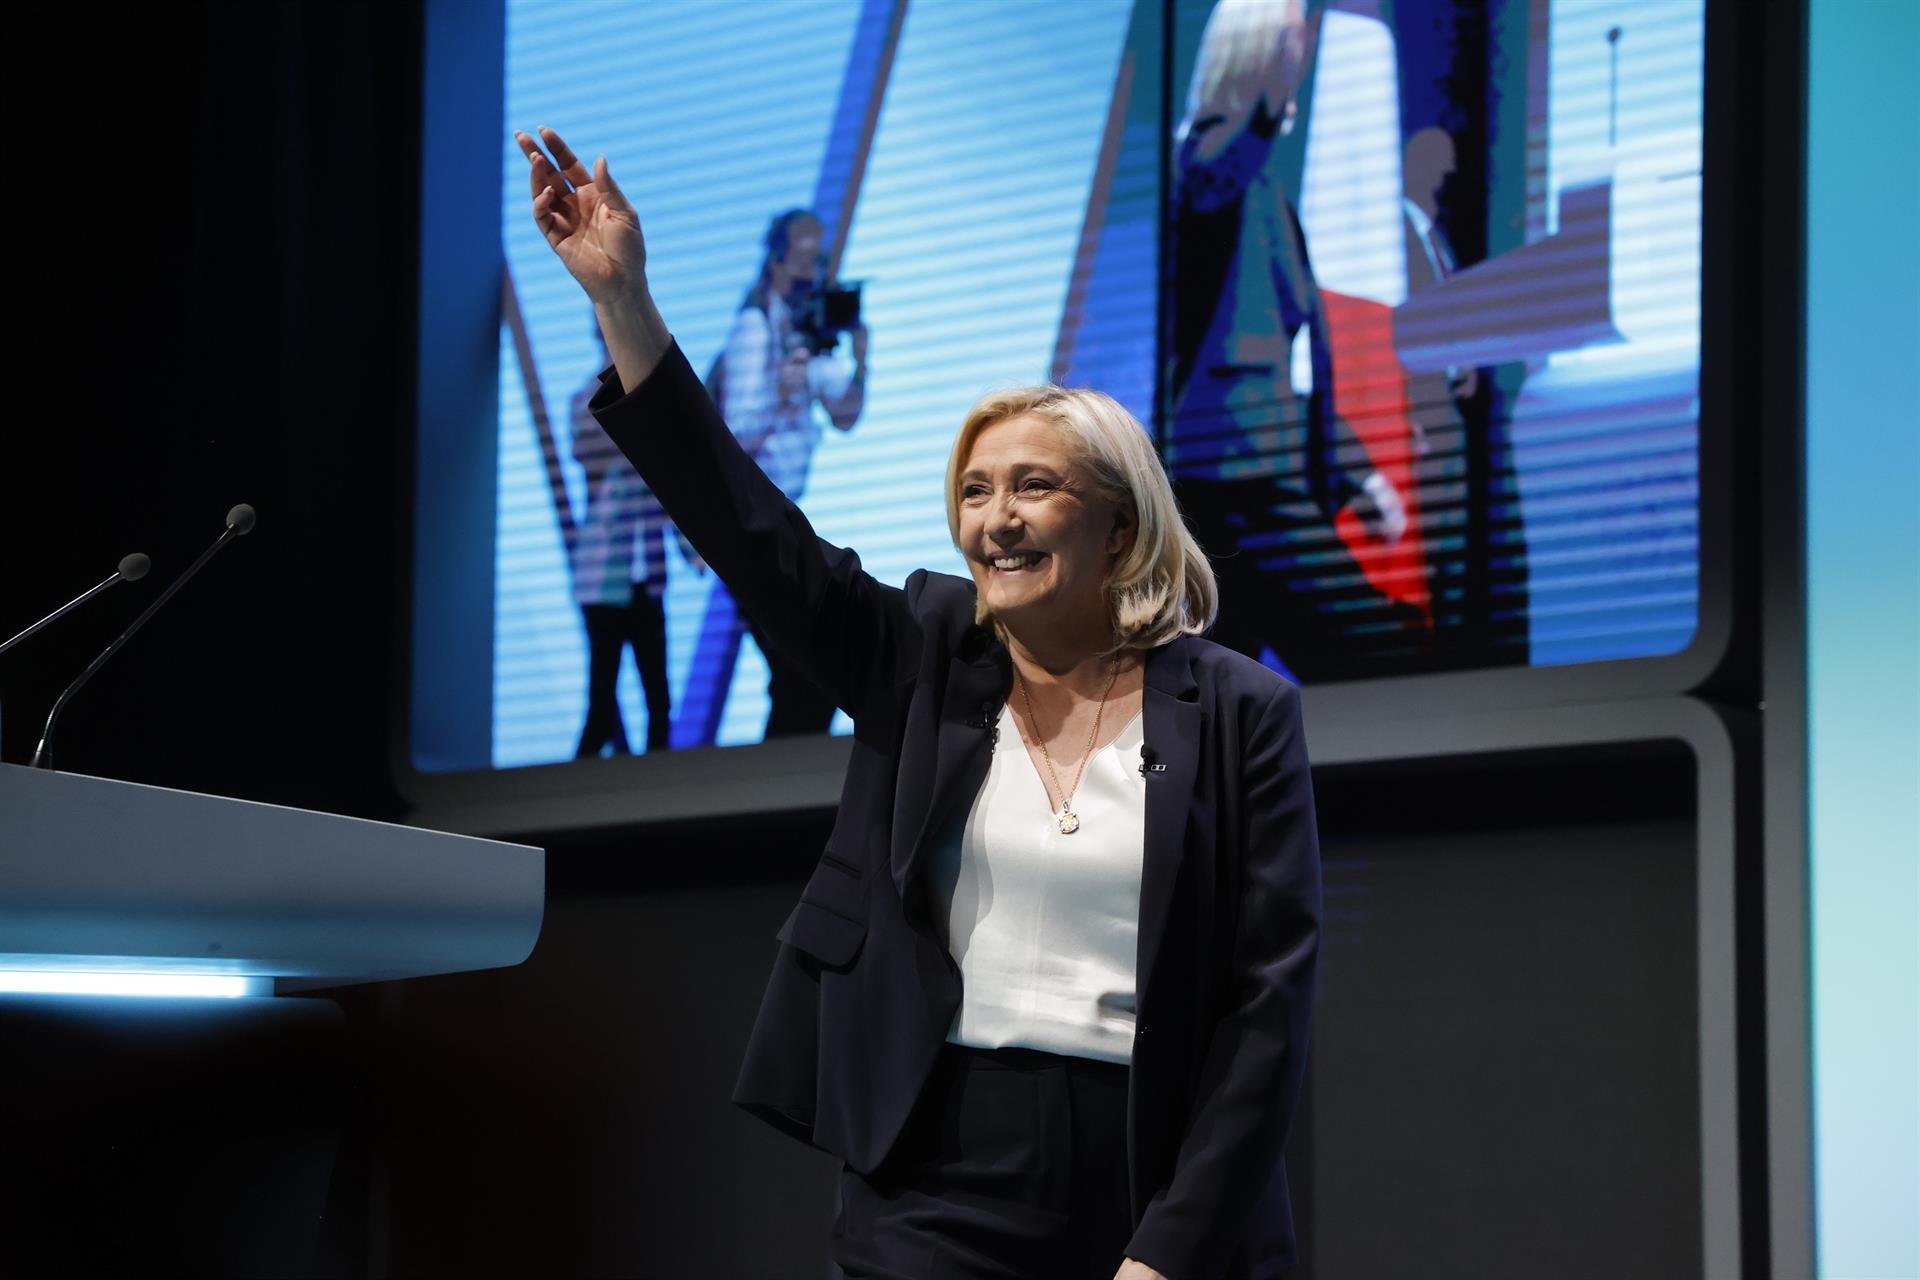 Le Pen promete «poner en orden Francia en cinco años» y recibe el respaldo de Zemmour